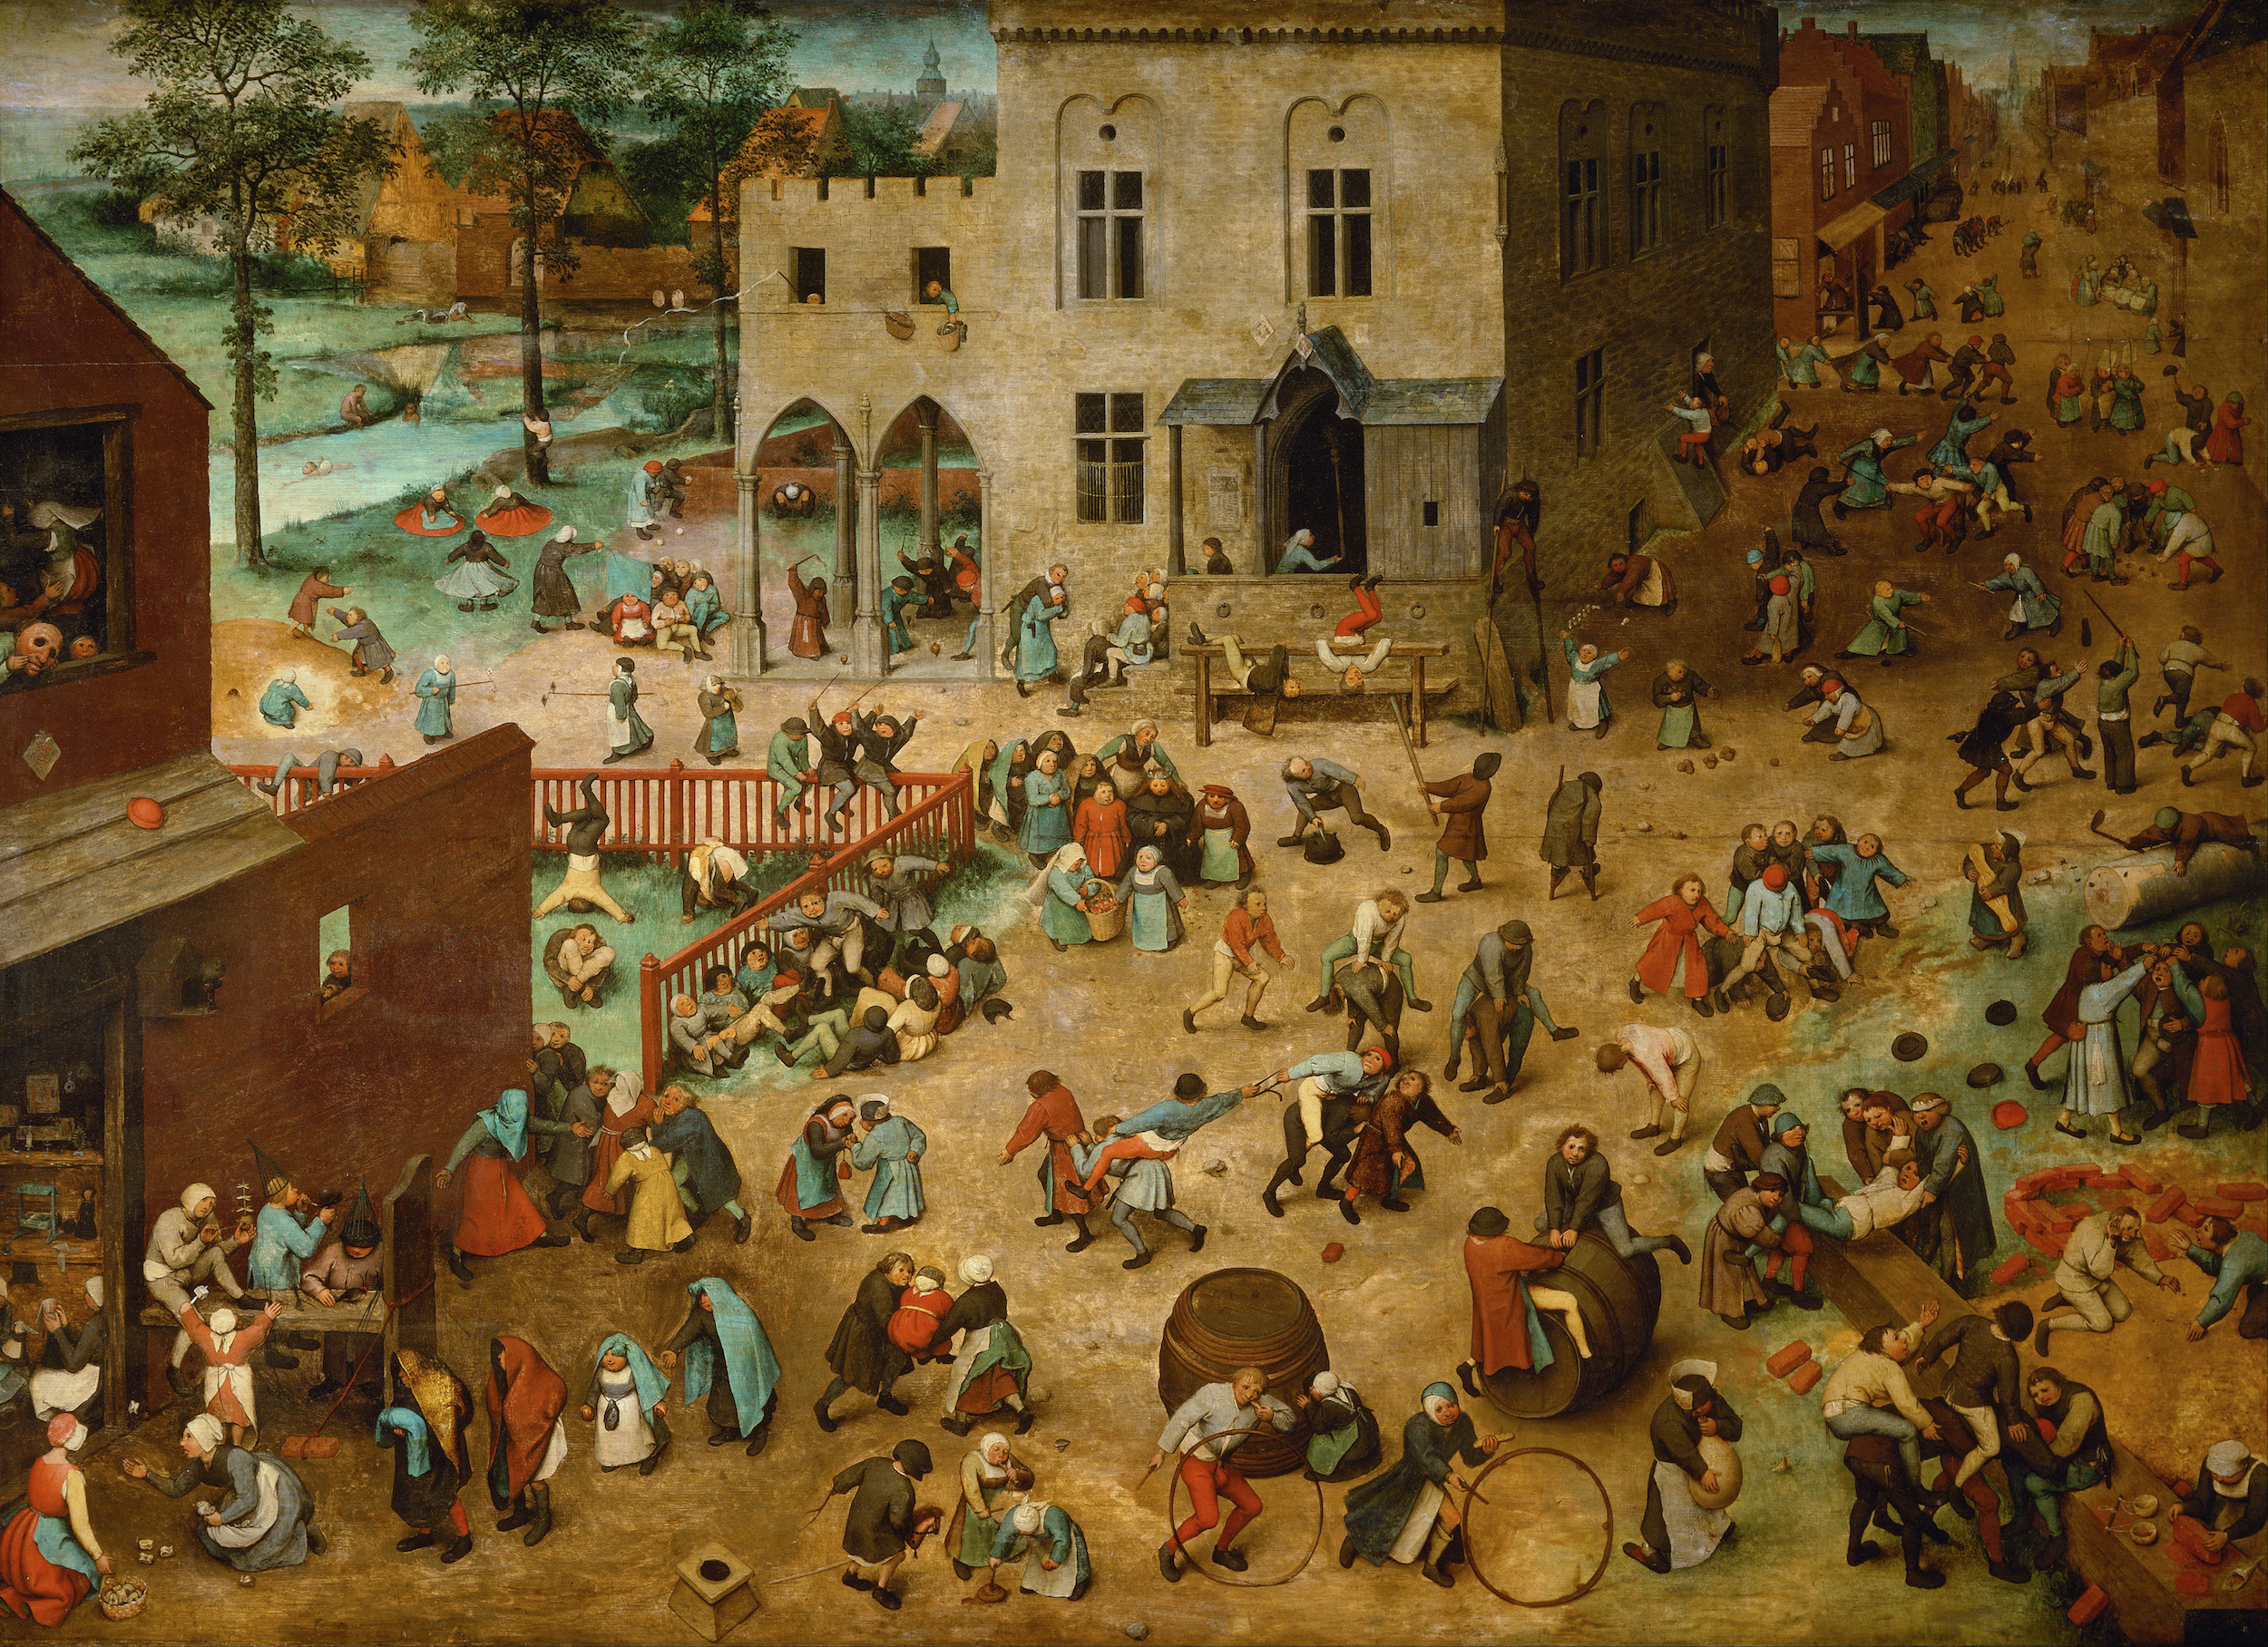 بازی کودکان by Pieter Bruegel the Elder - 1560 - 118 x 161 cm 